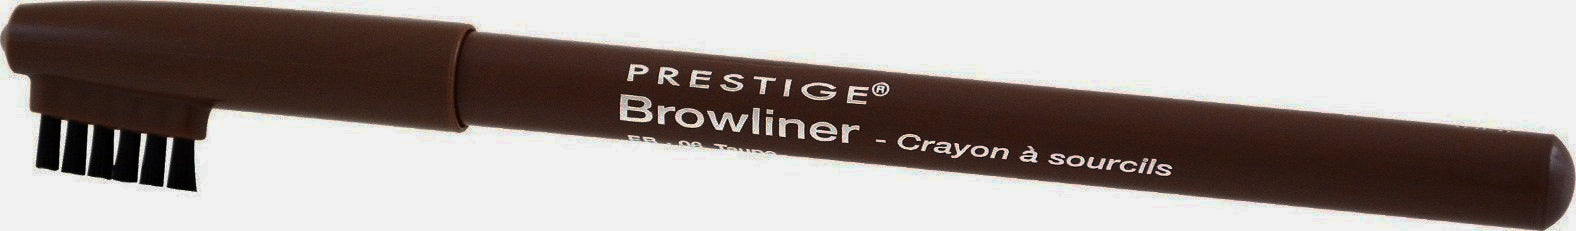 PRESTIGE COSMETICS Browliner Pencil,  EB-04 Earth Brown - ADDROS.COM